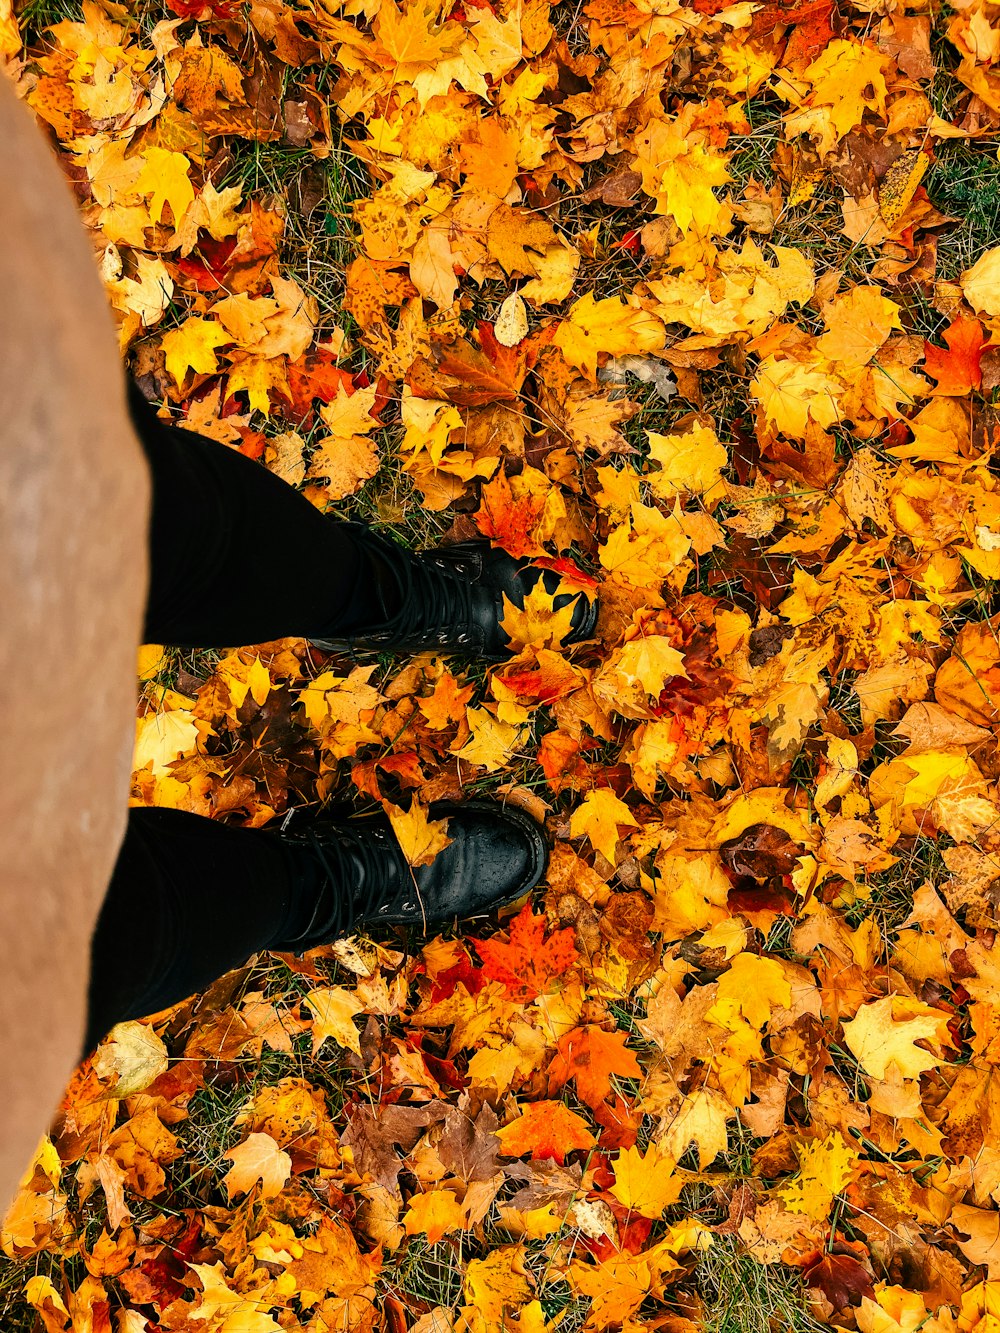 I piedi di una persona in un mucchio di foglie